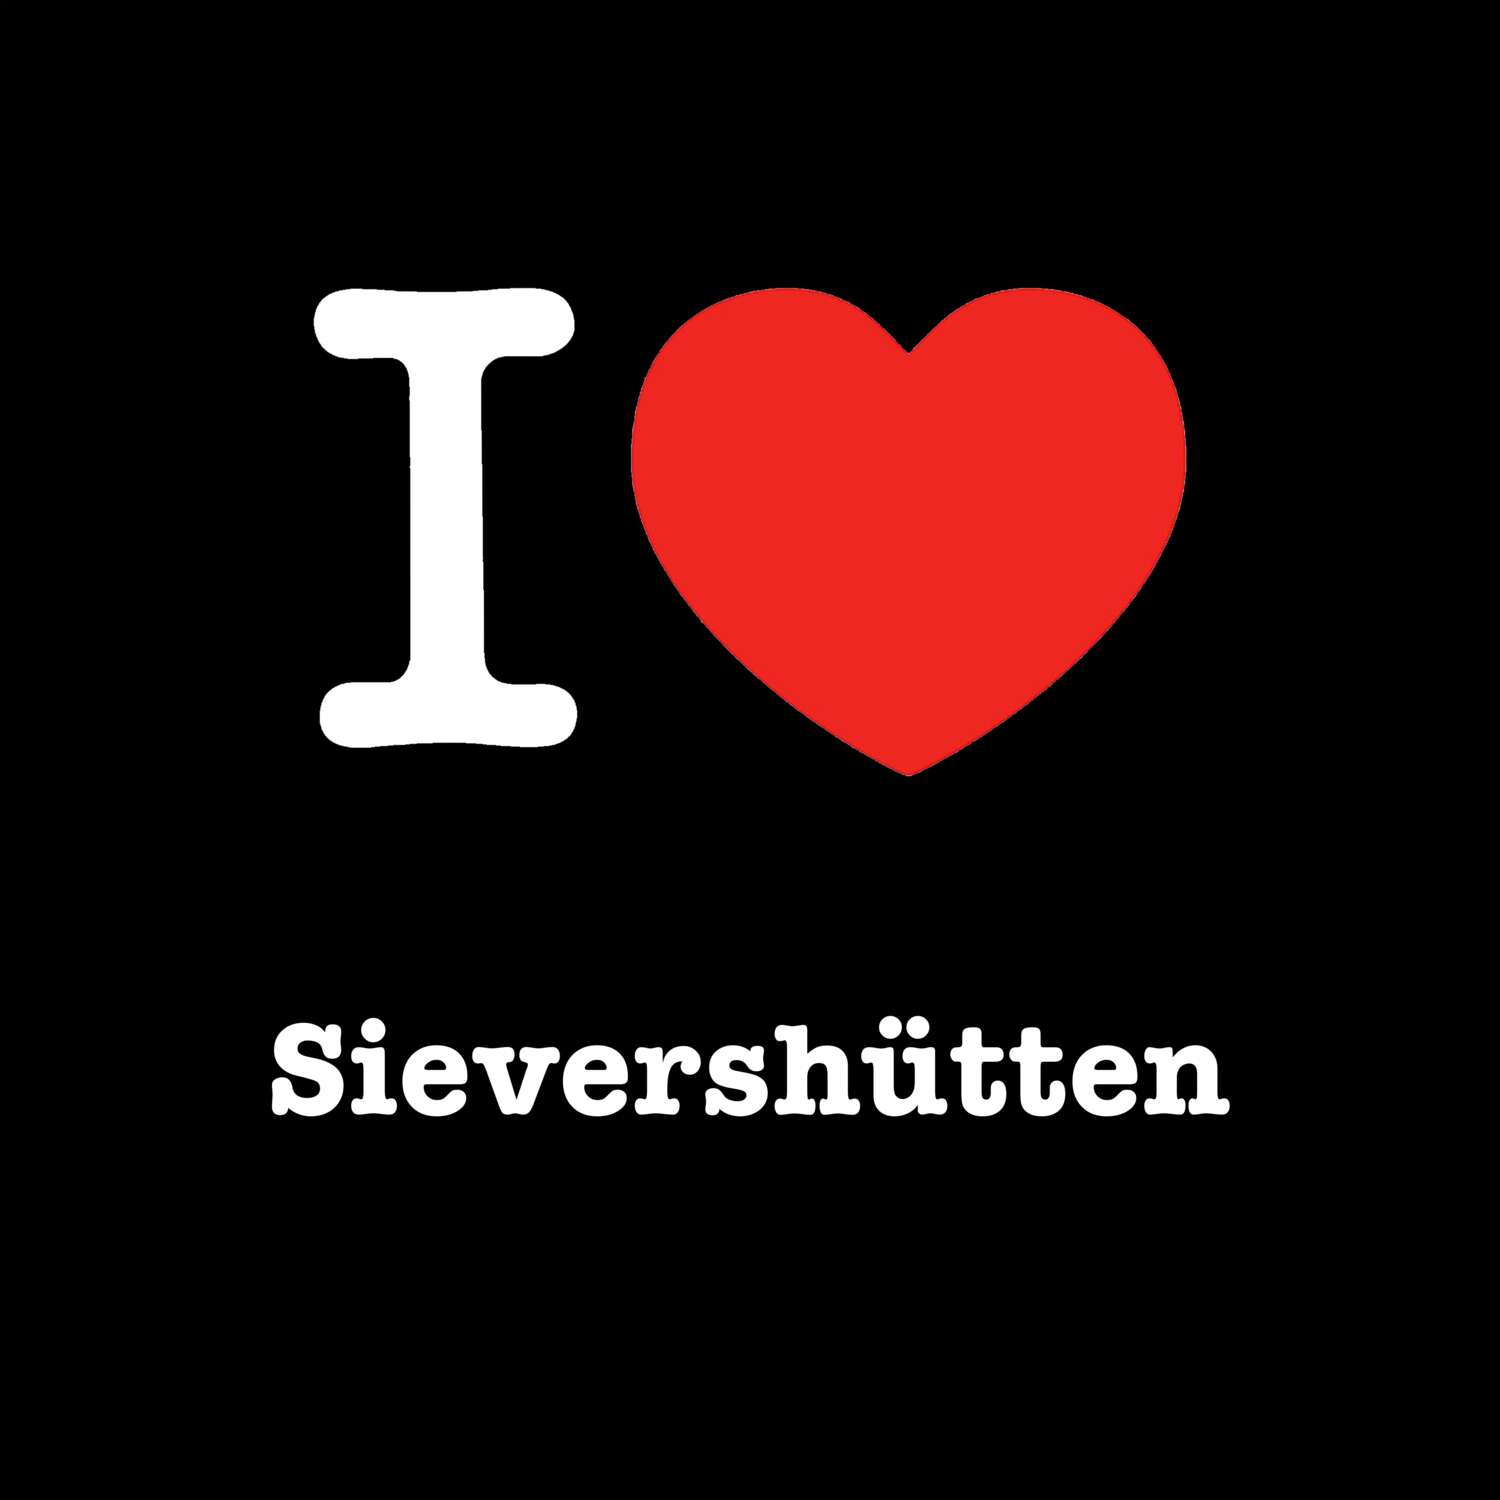 Sievershütten T-Shirt »I love«